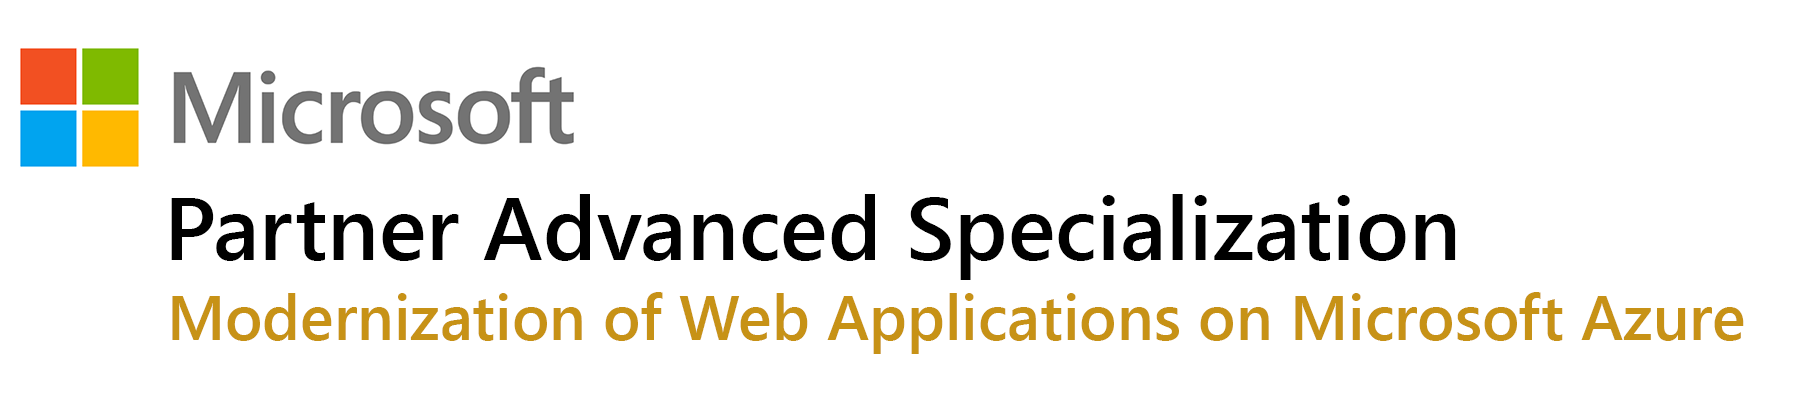 Microsoft Partner Advanced Specialization Web Application Modernization